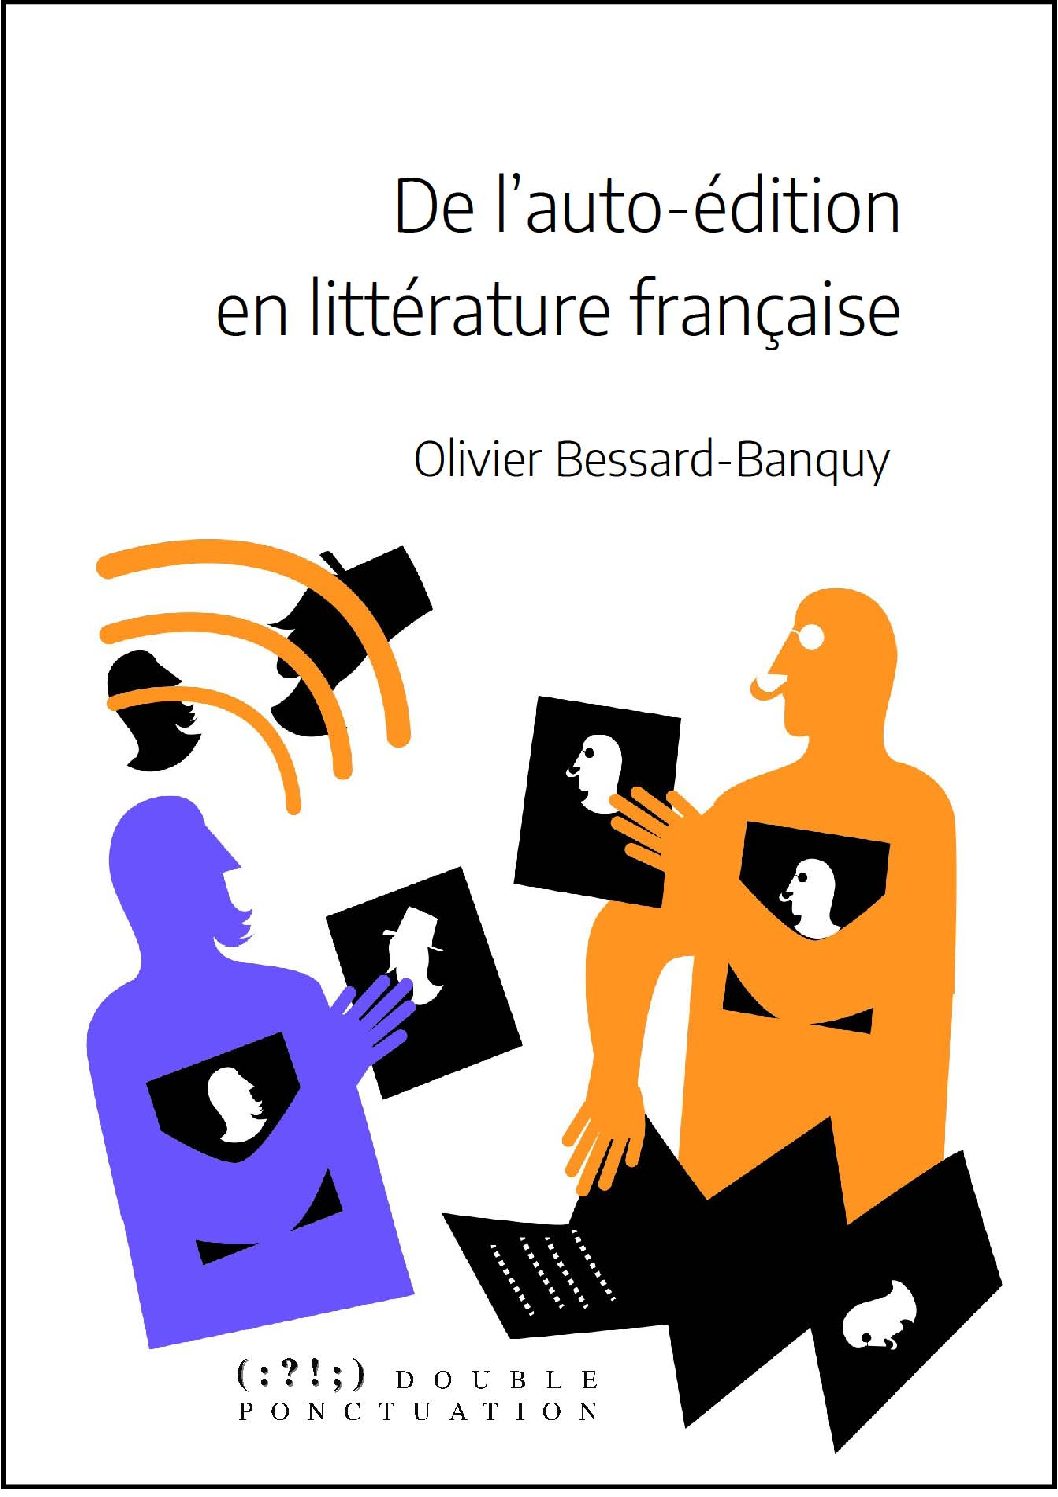 De l’auto-édition en littérature française